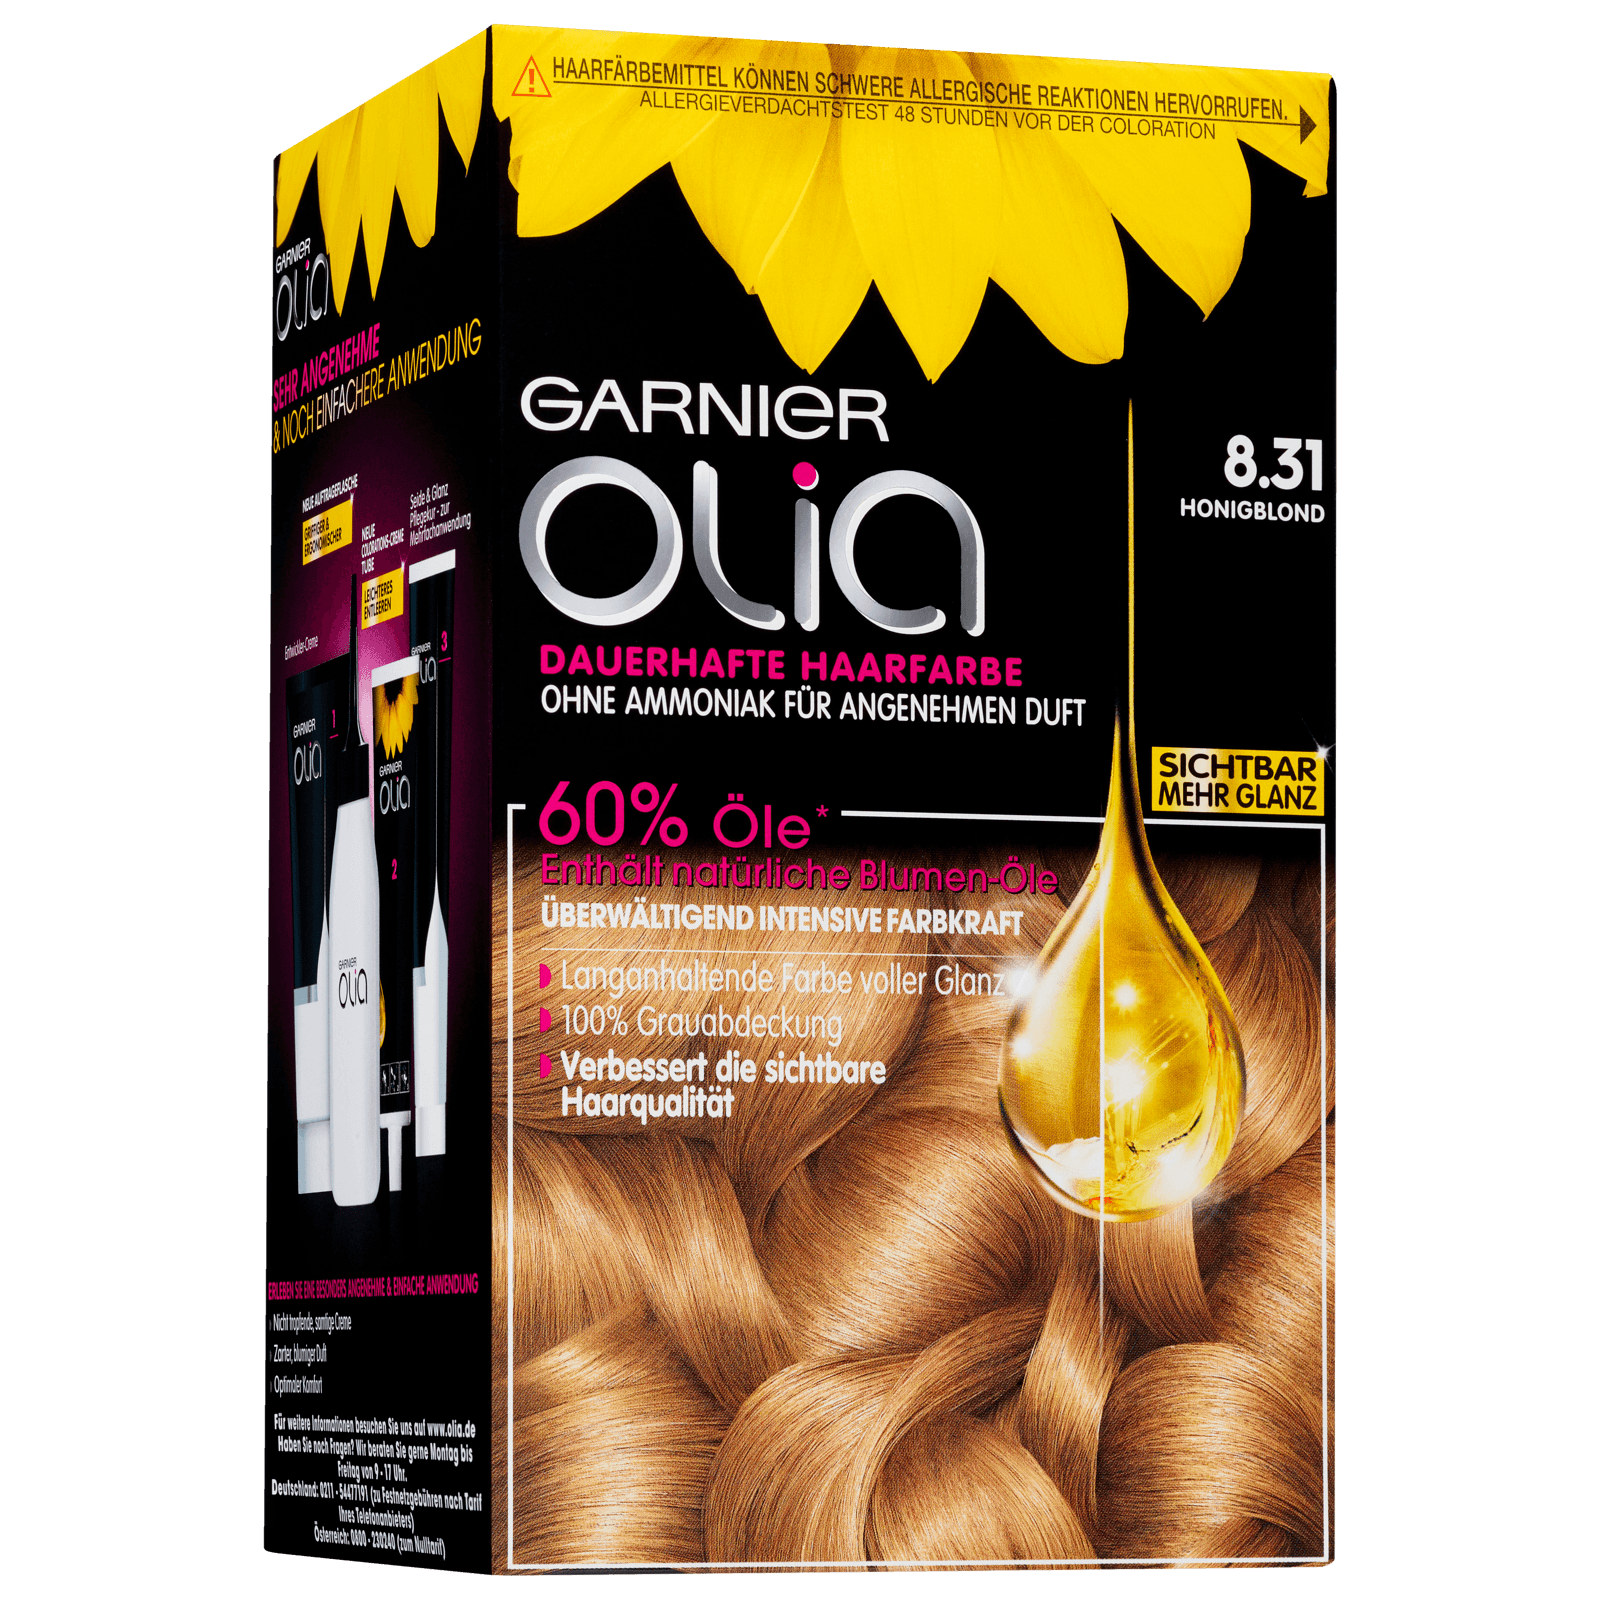 Garnier Olia Haarfarbe bestellen! REWE online bei 8.31 honigblond Dauerhafte